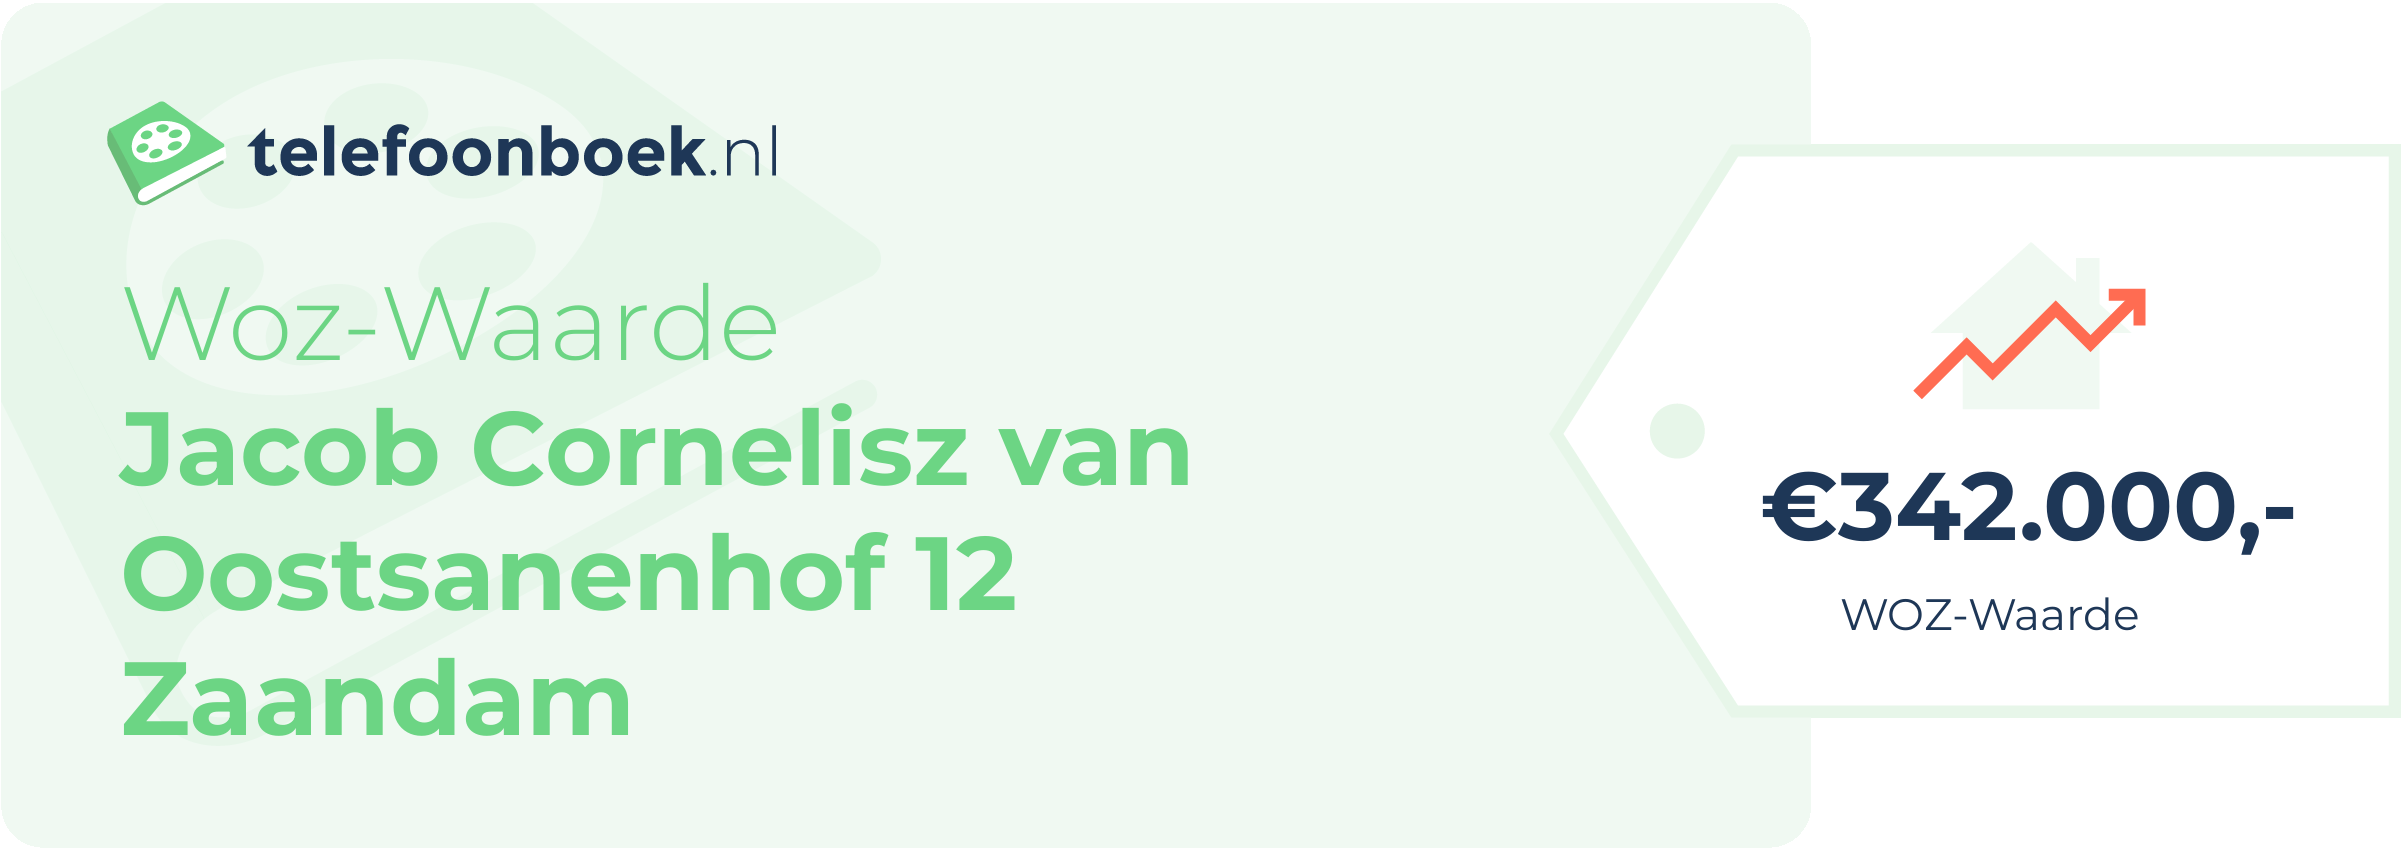 WOZ-waarde Jacob Cornelisz Van Oostsanenhof 12 Zaandam